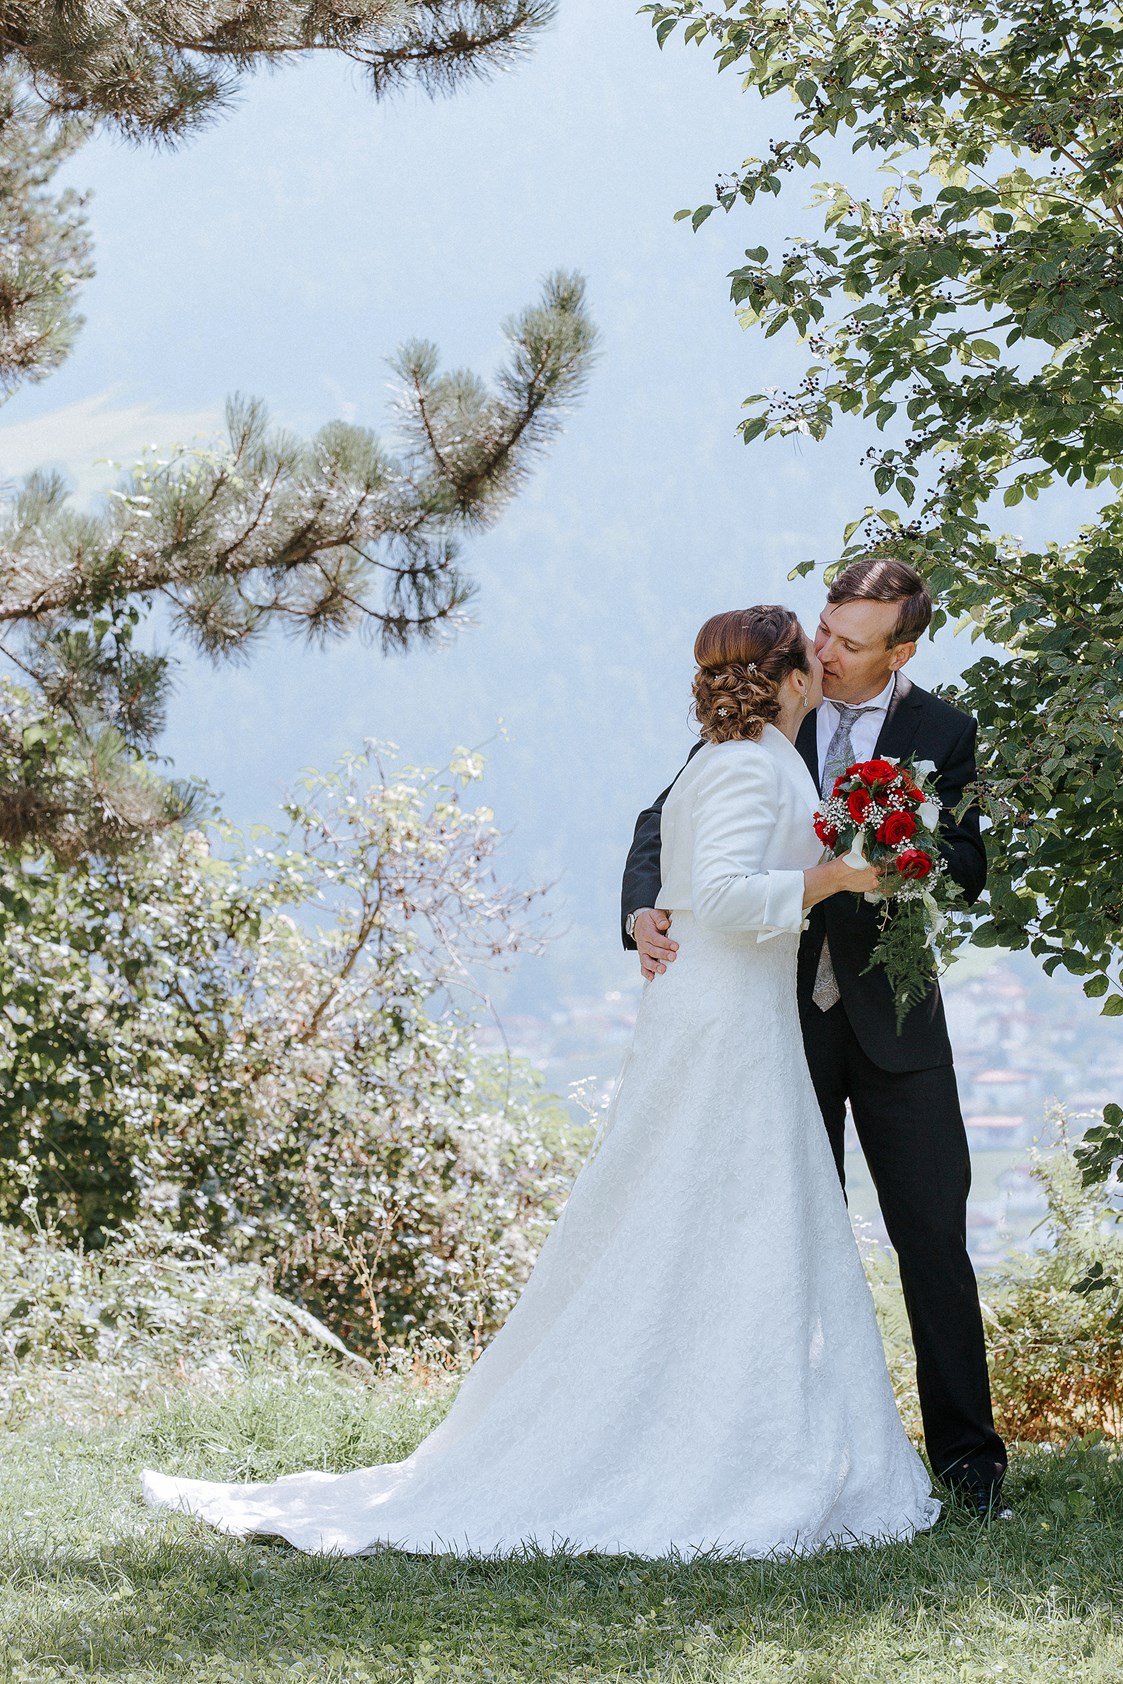 Hochzeitsfotograf: Hochzeit am Locherboden bei Mieming in Tirol .. Die zwei Gäste aus Deutschland heirateten bei uns im schönen Tirol am nahezu märchenhaften Locherboden - click & smile photography